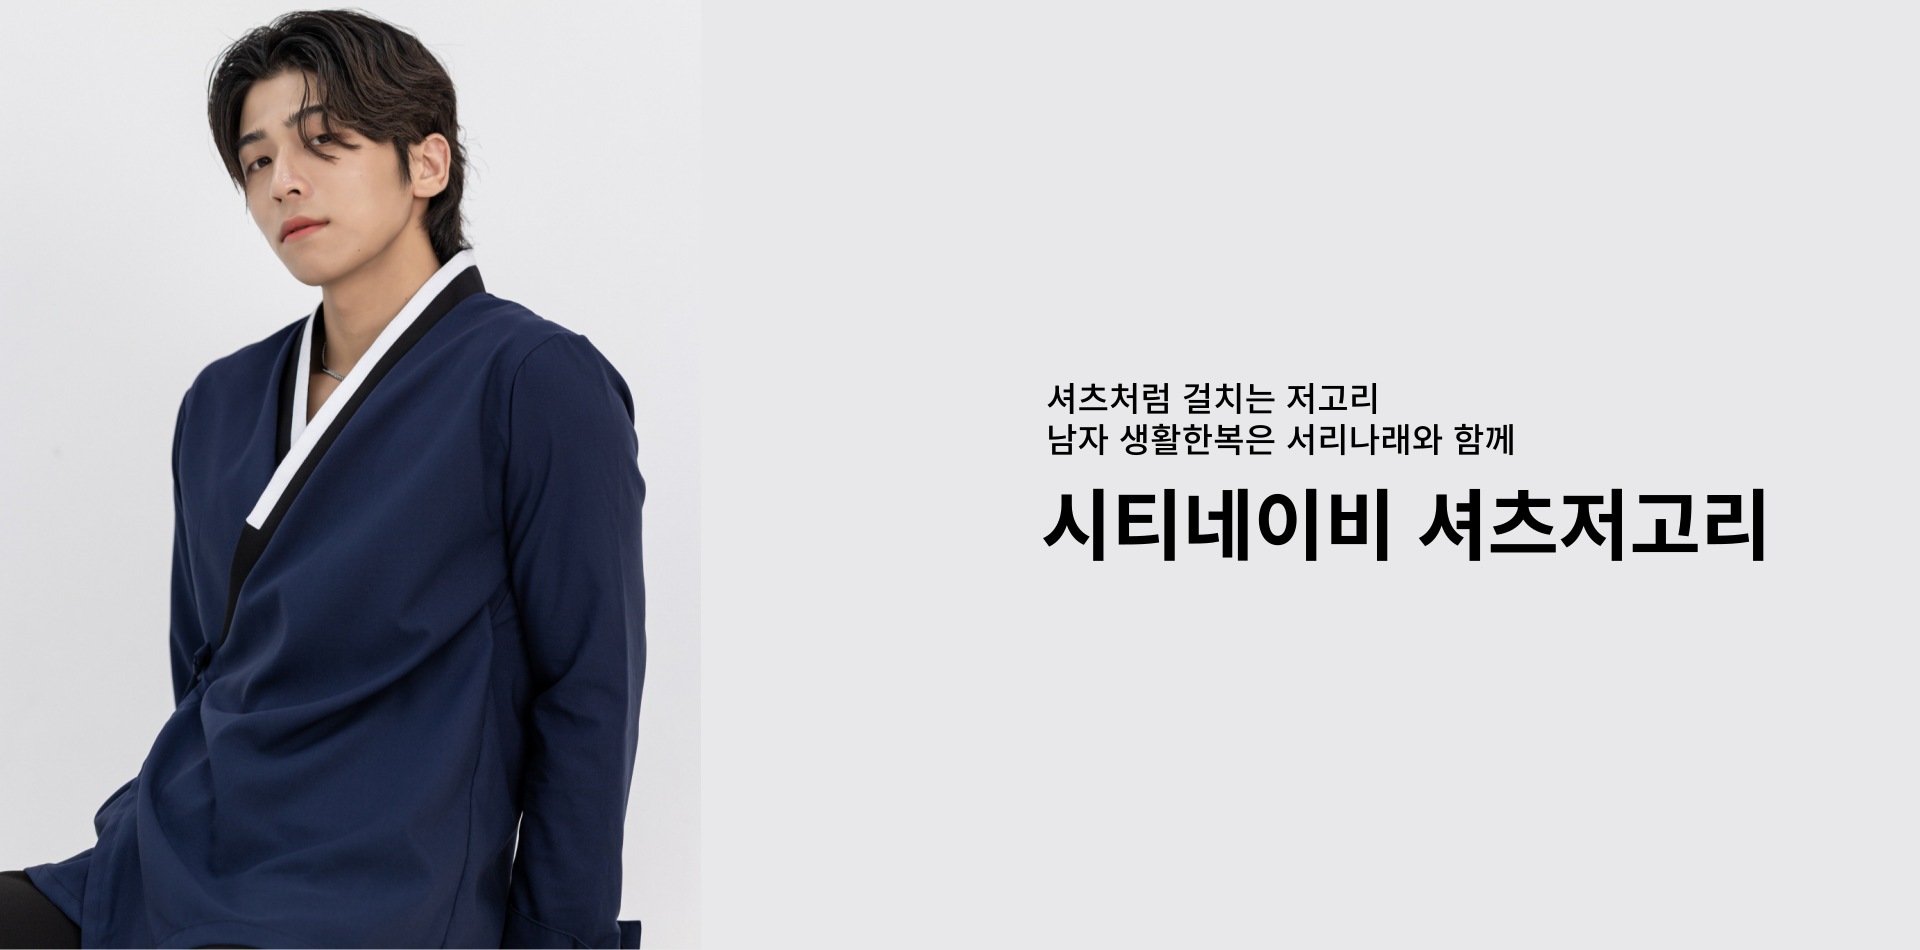 데일리하고 깔끔한 핏 라이더 깃자켓 레더만의 시크한 무드와 한국적인 디테일이 녹은 라이더 깃자켓